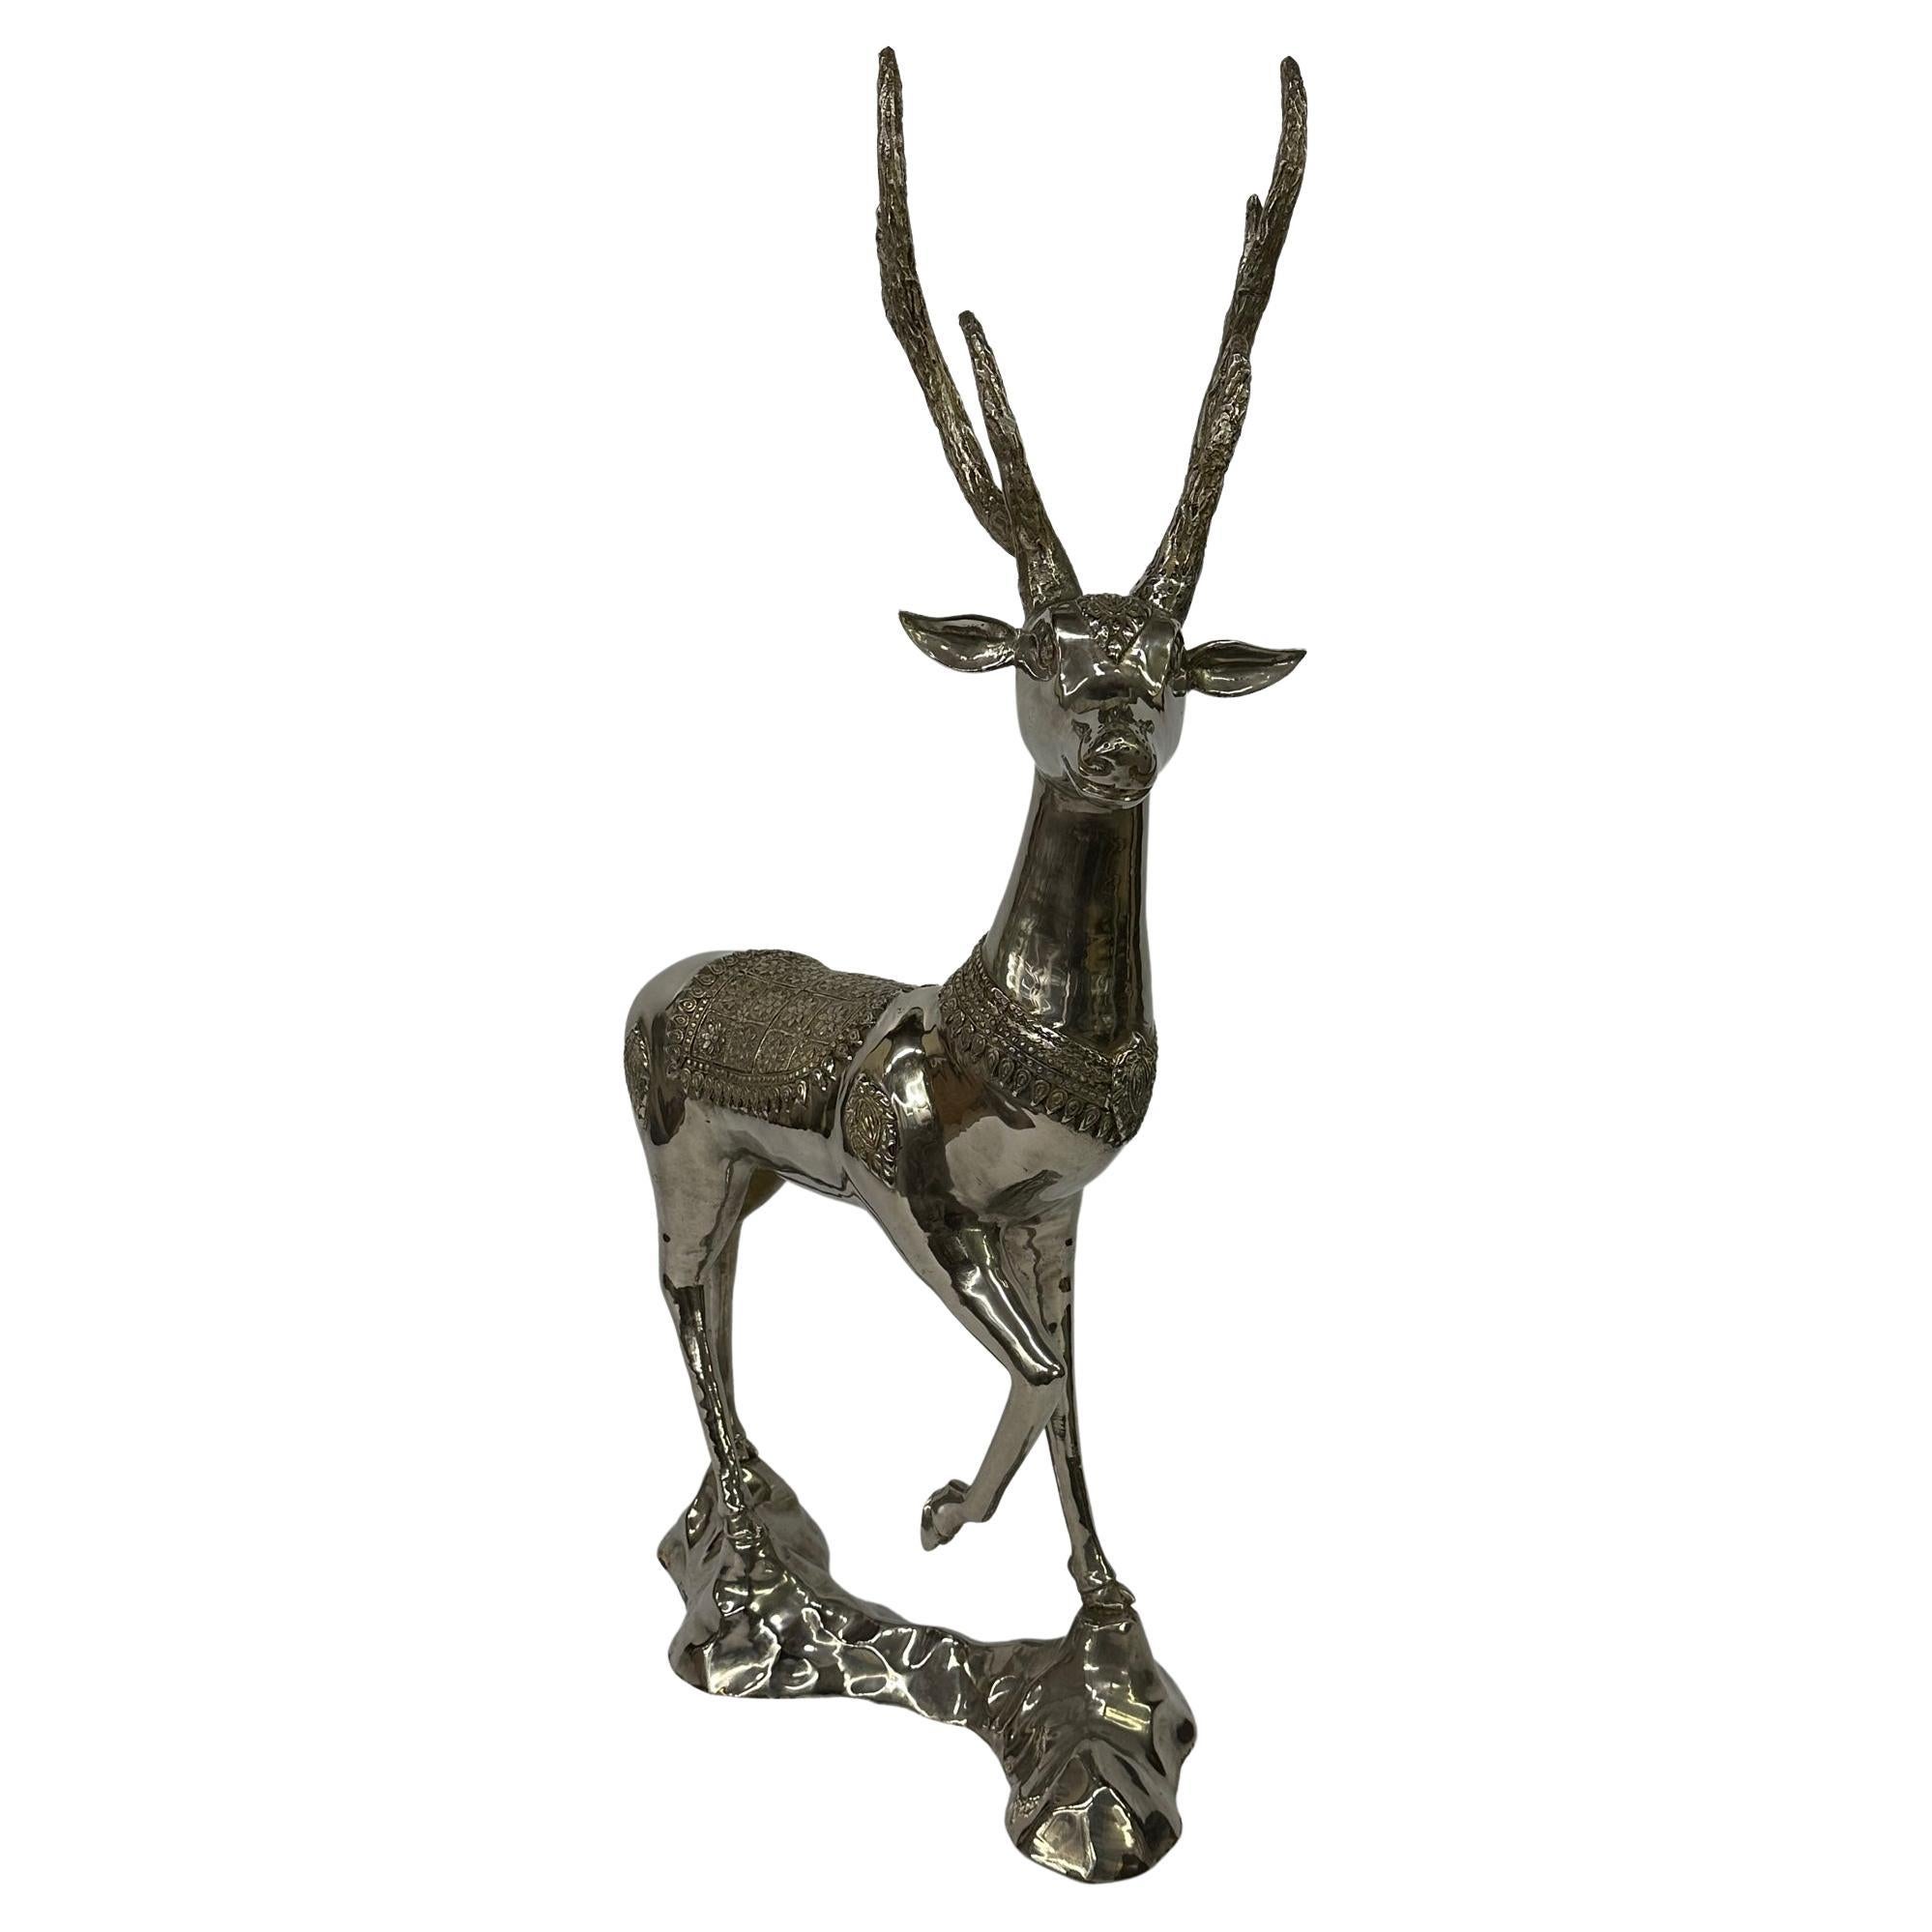 Impressionnante sculpture de cerf en laiton nickelé avec détails méticuleux